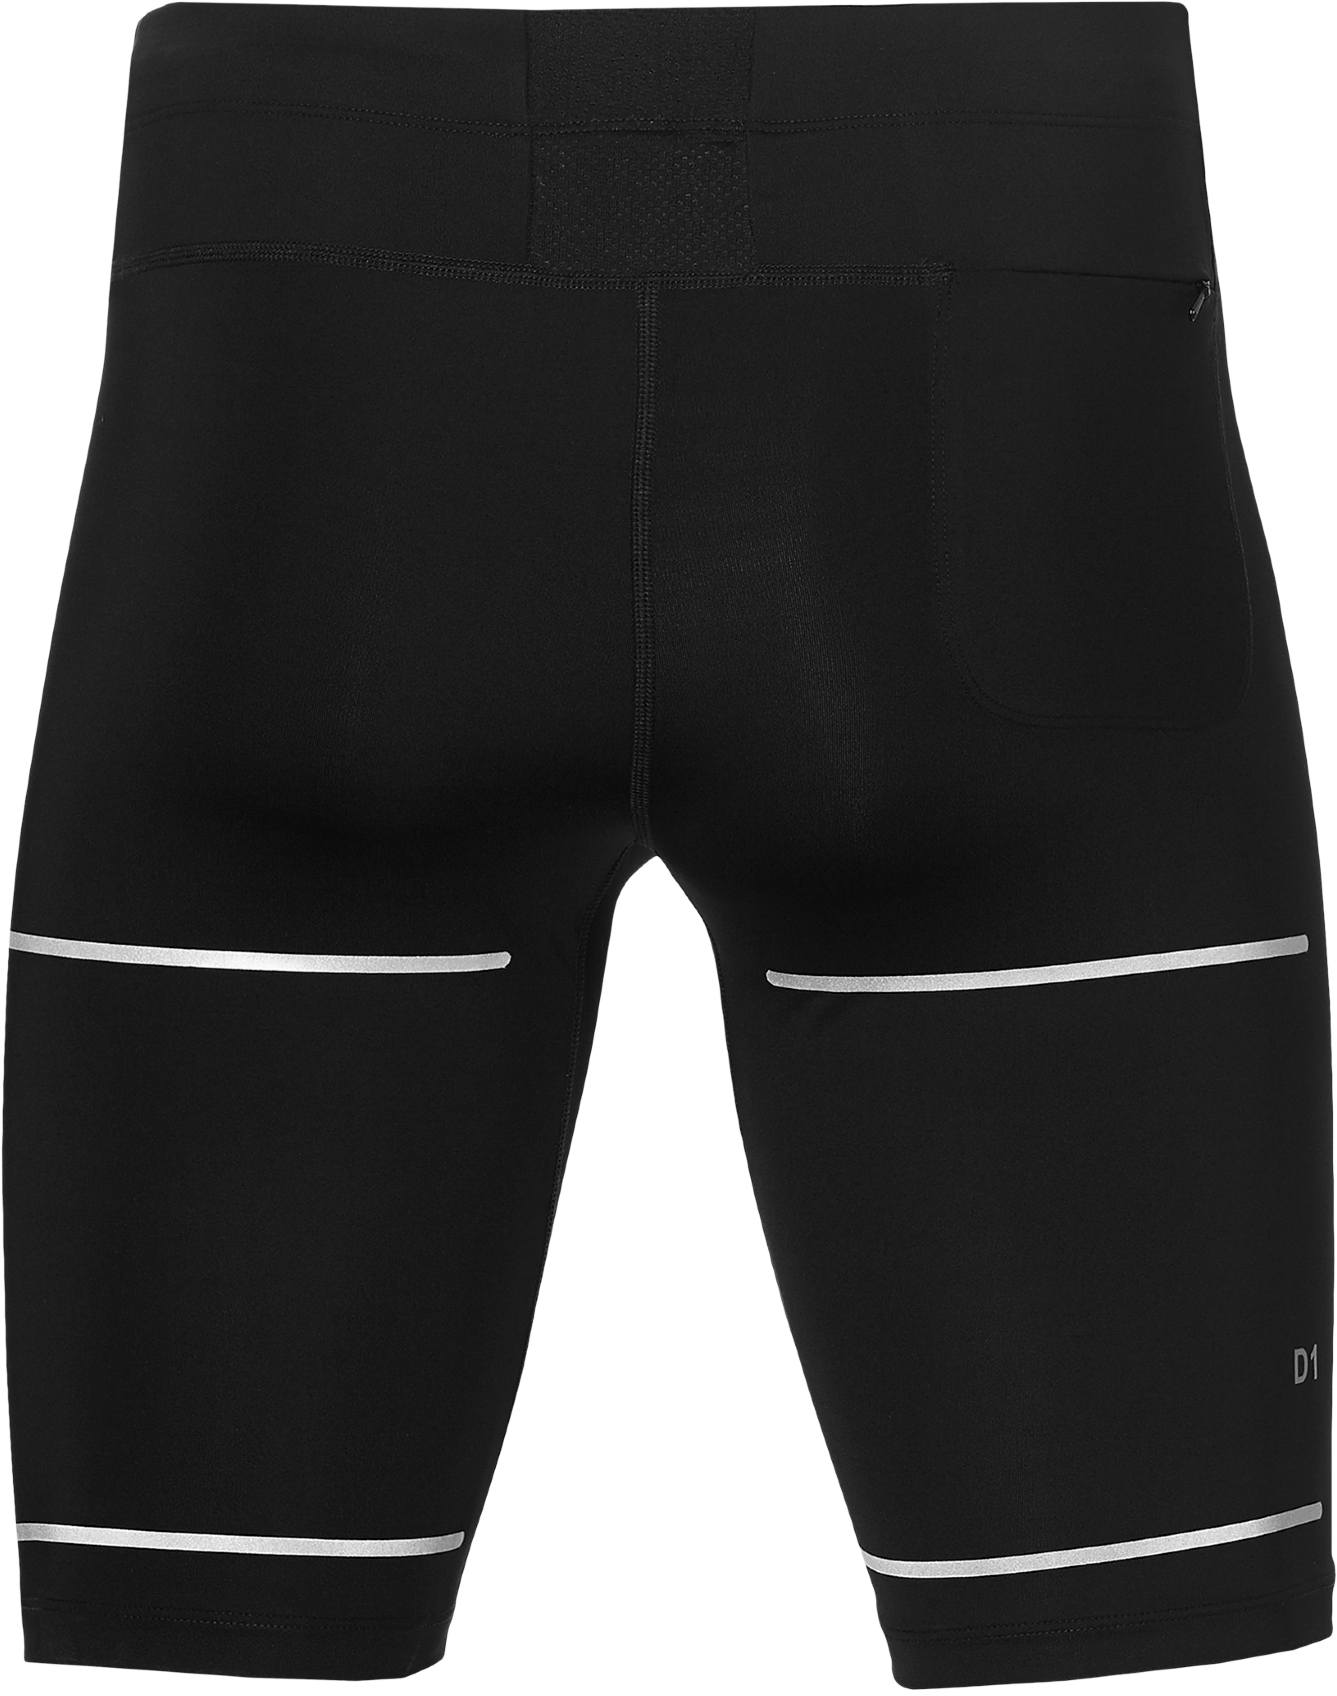 Men’s elastic shorts